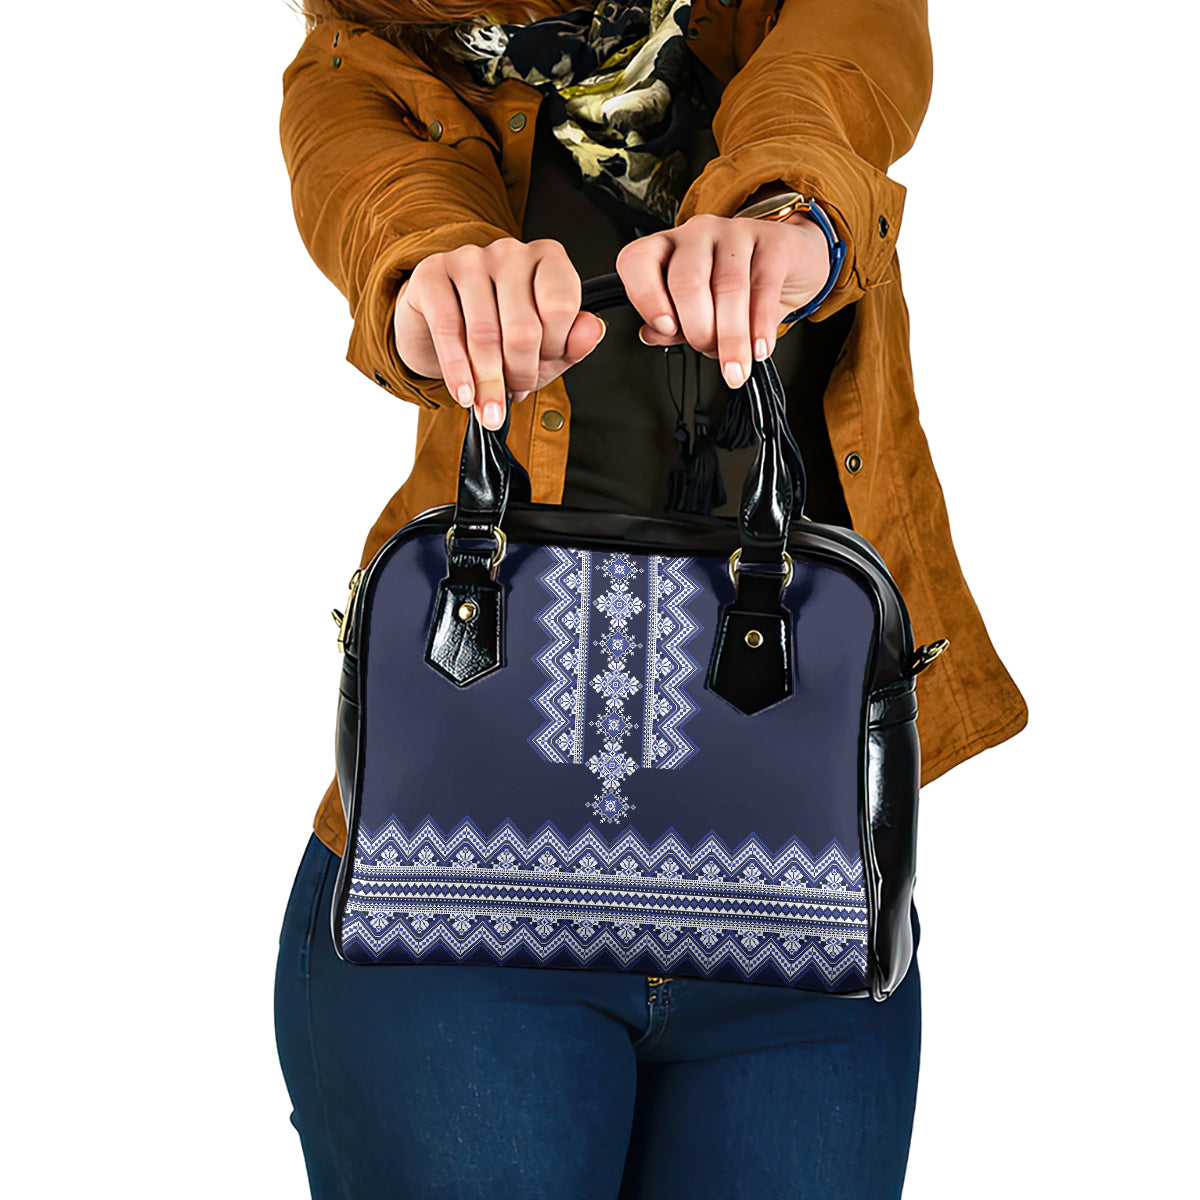 ukraine-folk-pattern-shoulder-handbag-ukrainian-navy-blue-version